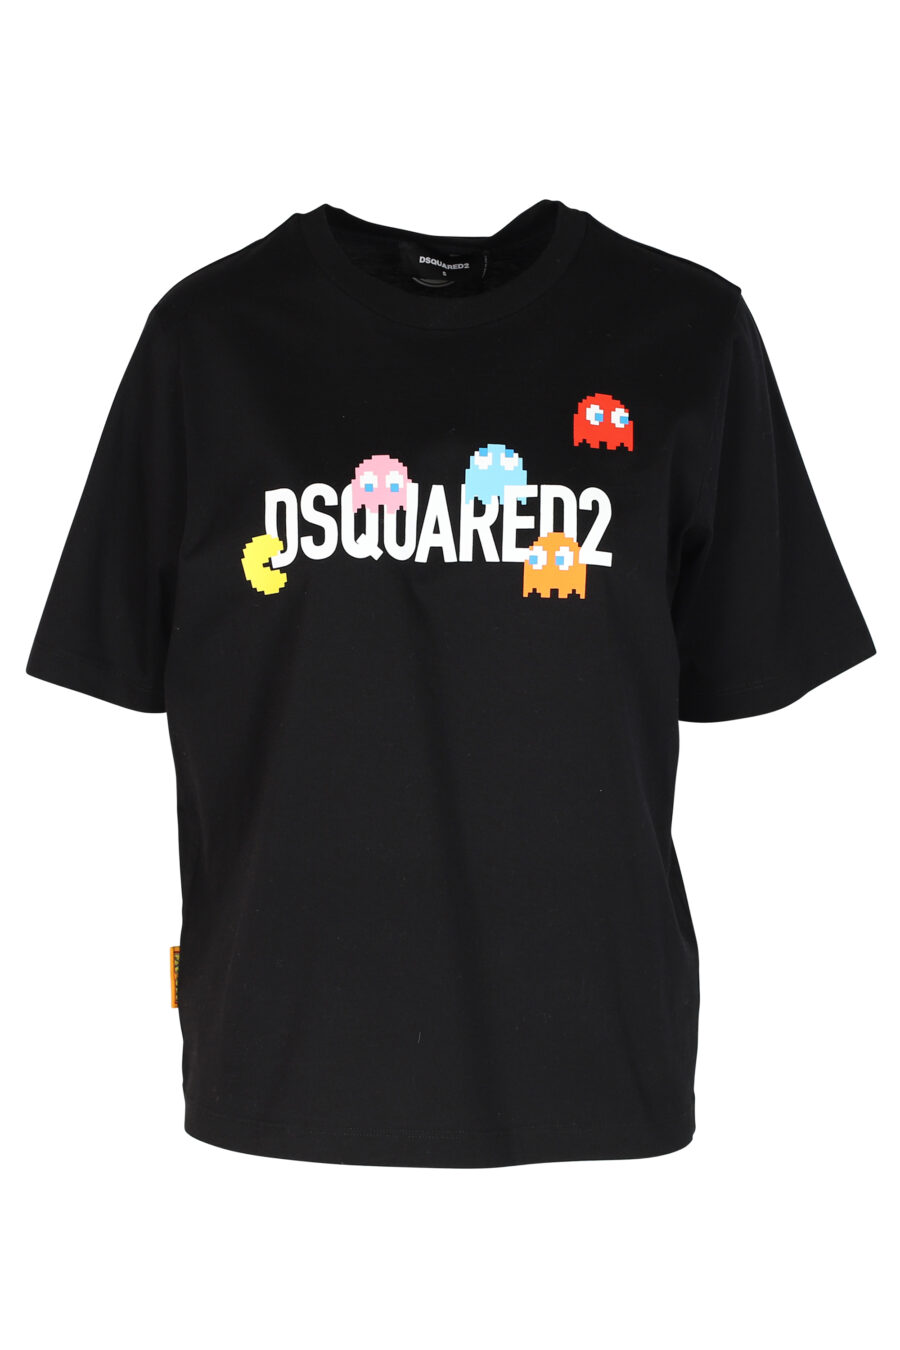 T-shirt preta com o logótipo "Pac-man" - 8054148185558